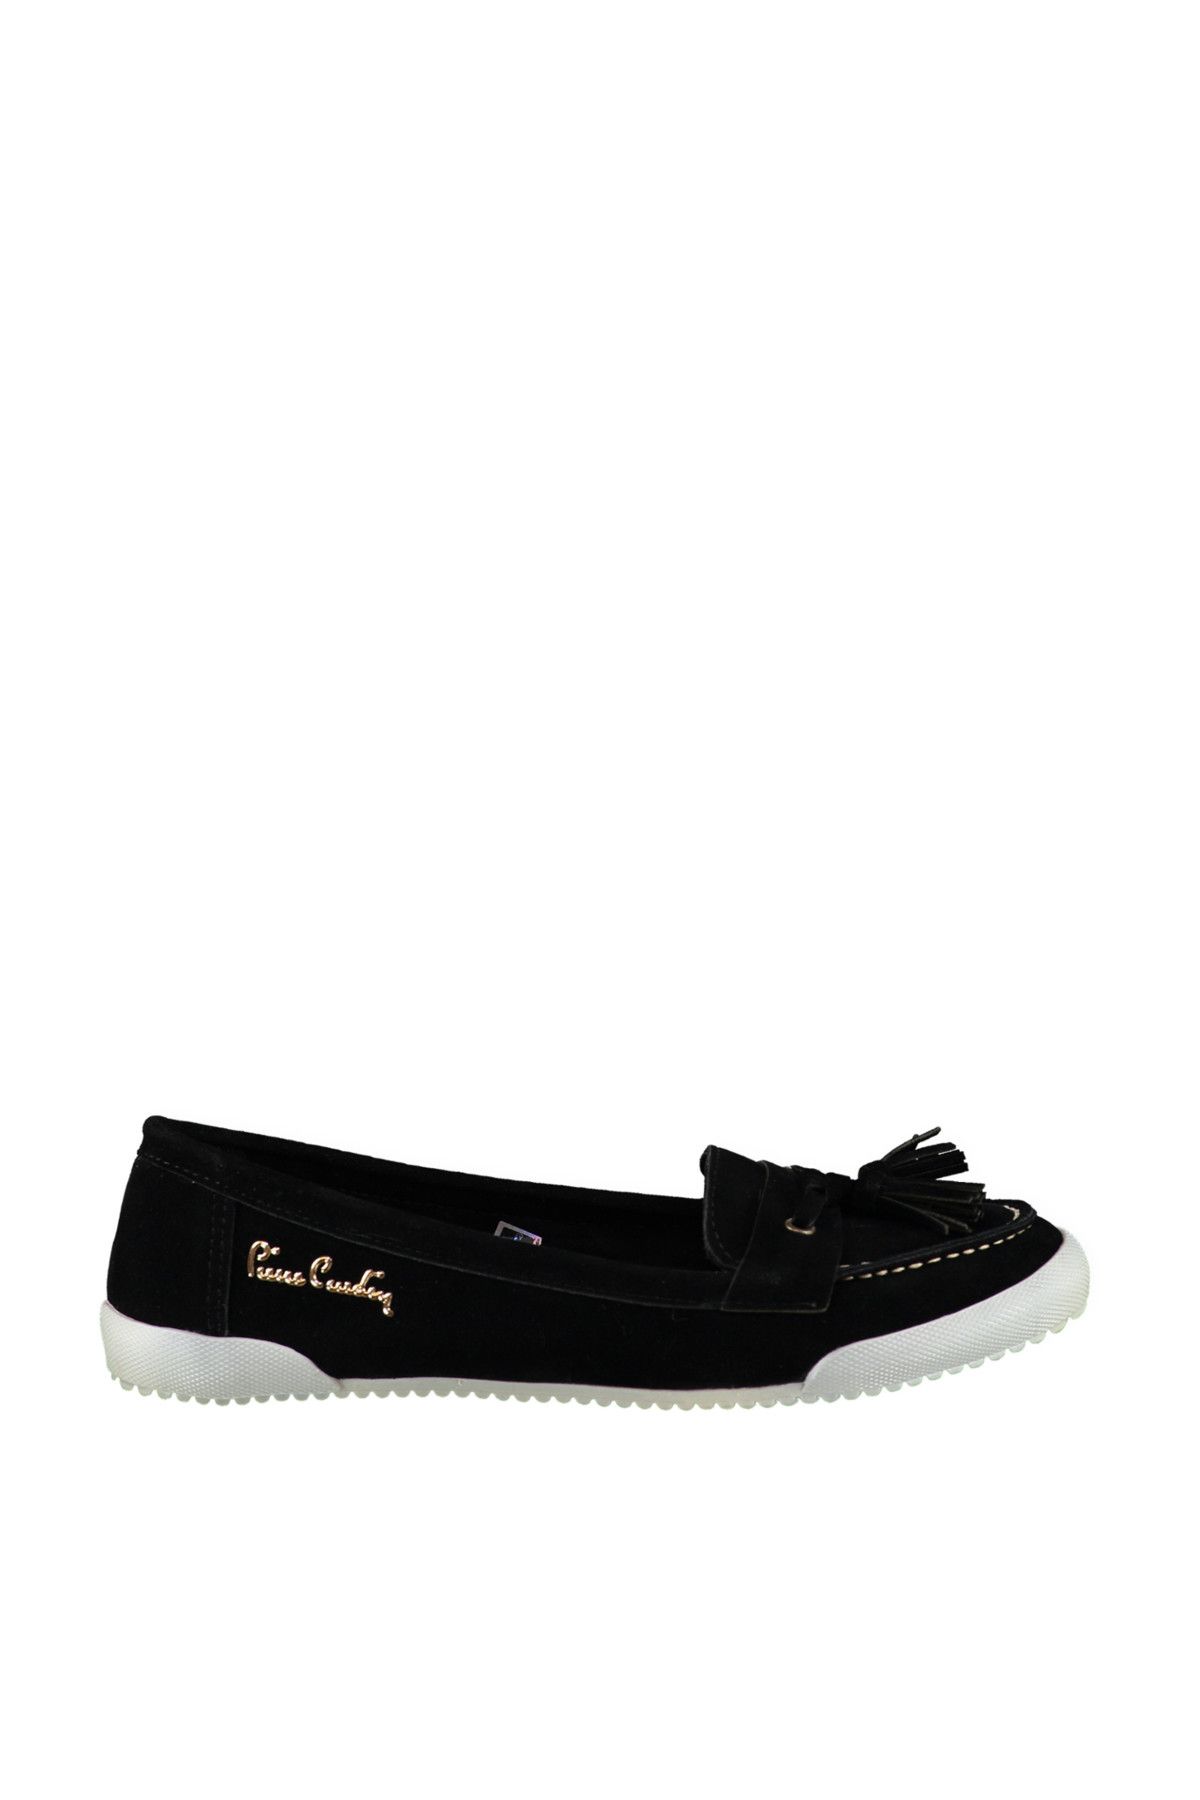 Pierre Cardin Siyah Kadın Loafer Ayakkabı 70099